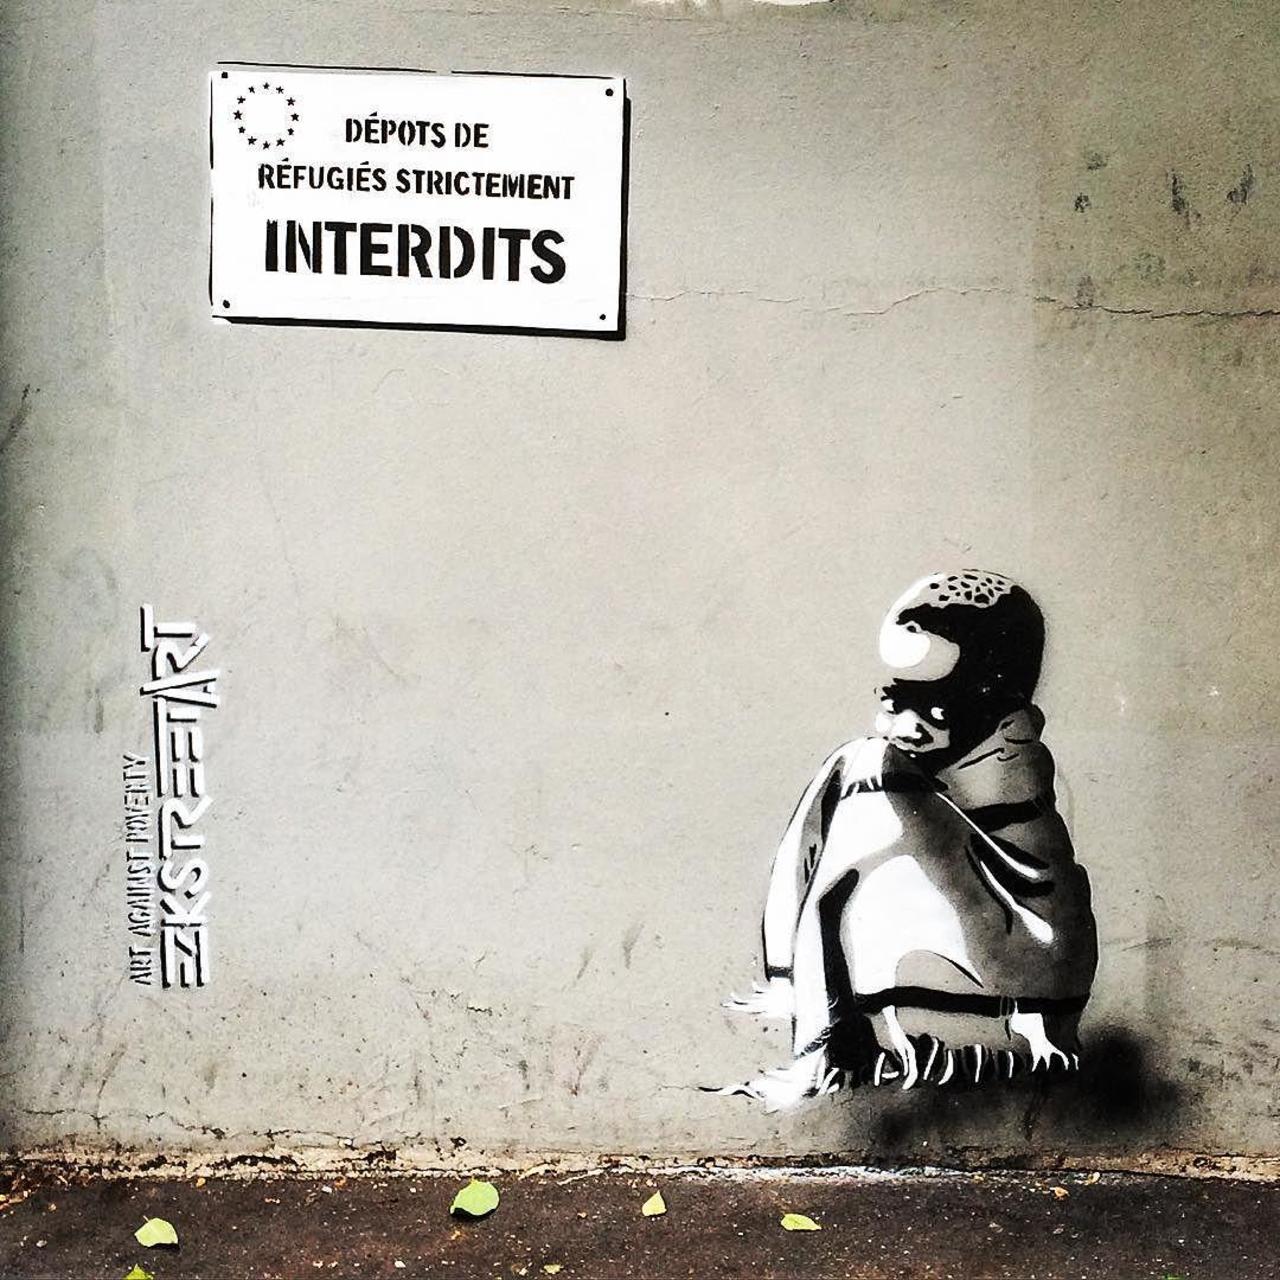 #Paris #graffiti photo by @julosteart http://ift.tt/1MoQUSp #StreetArt http://t.co/ZHFIJoTc2O